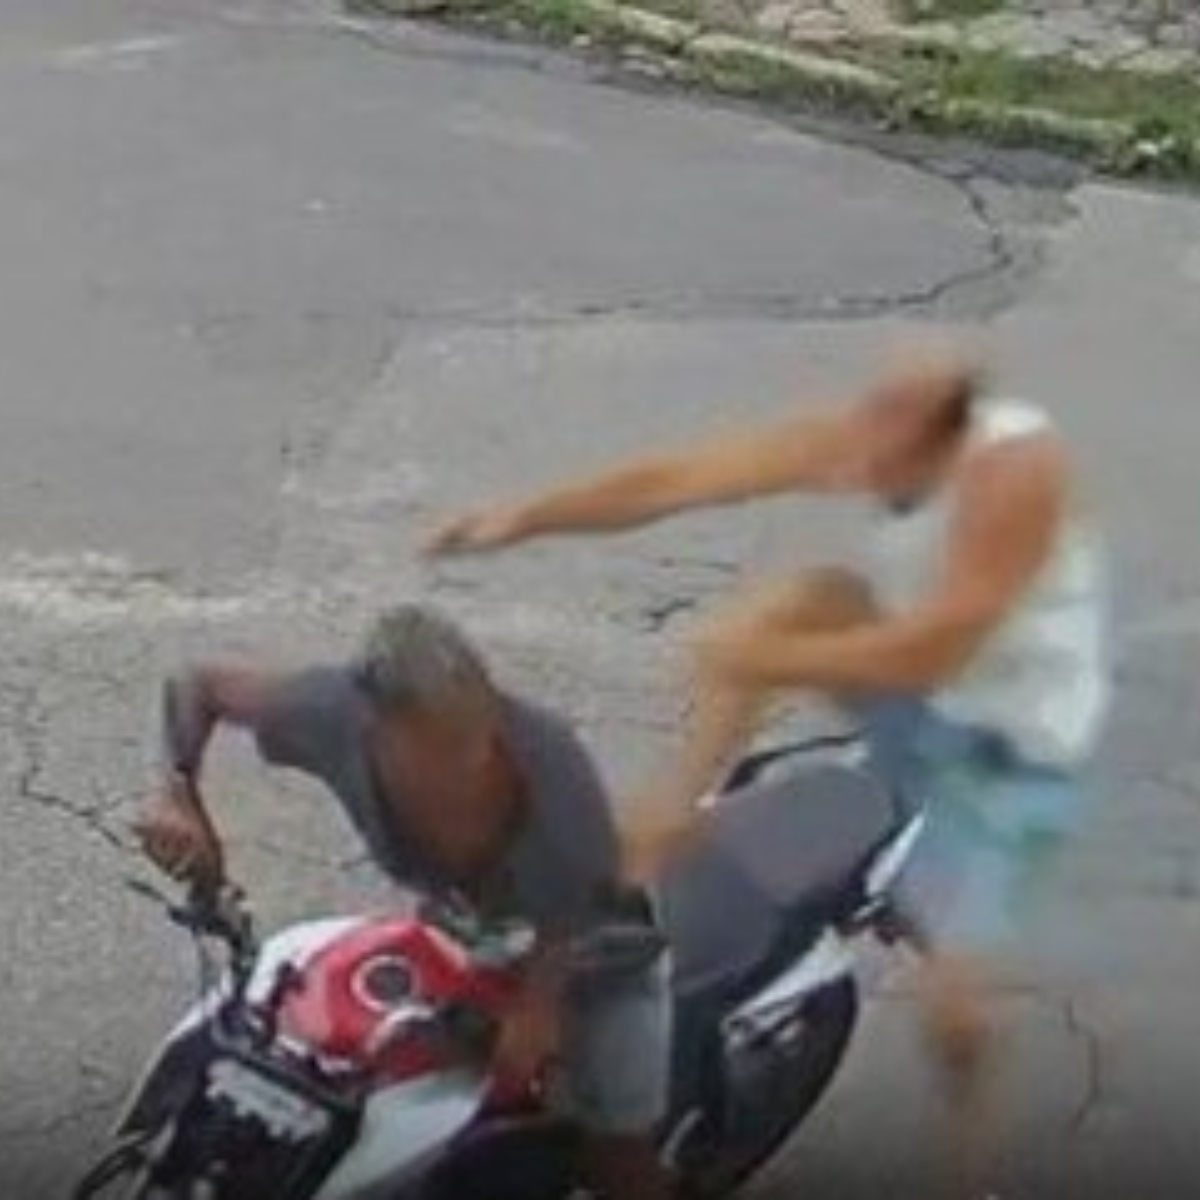  Homem reage a assalto e acerta 'voadora' em um dos criminosos 